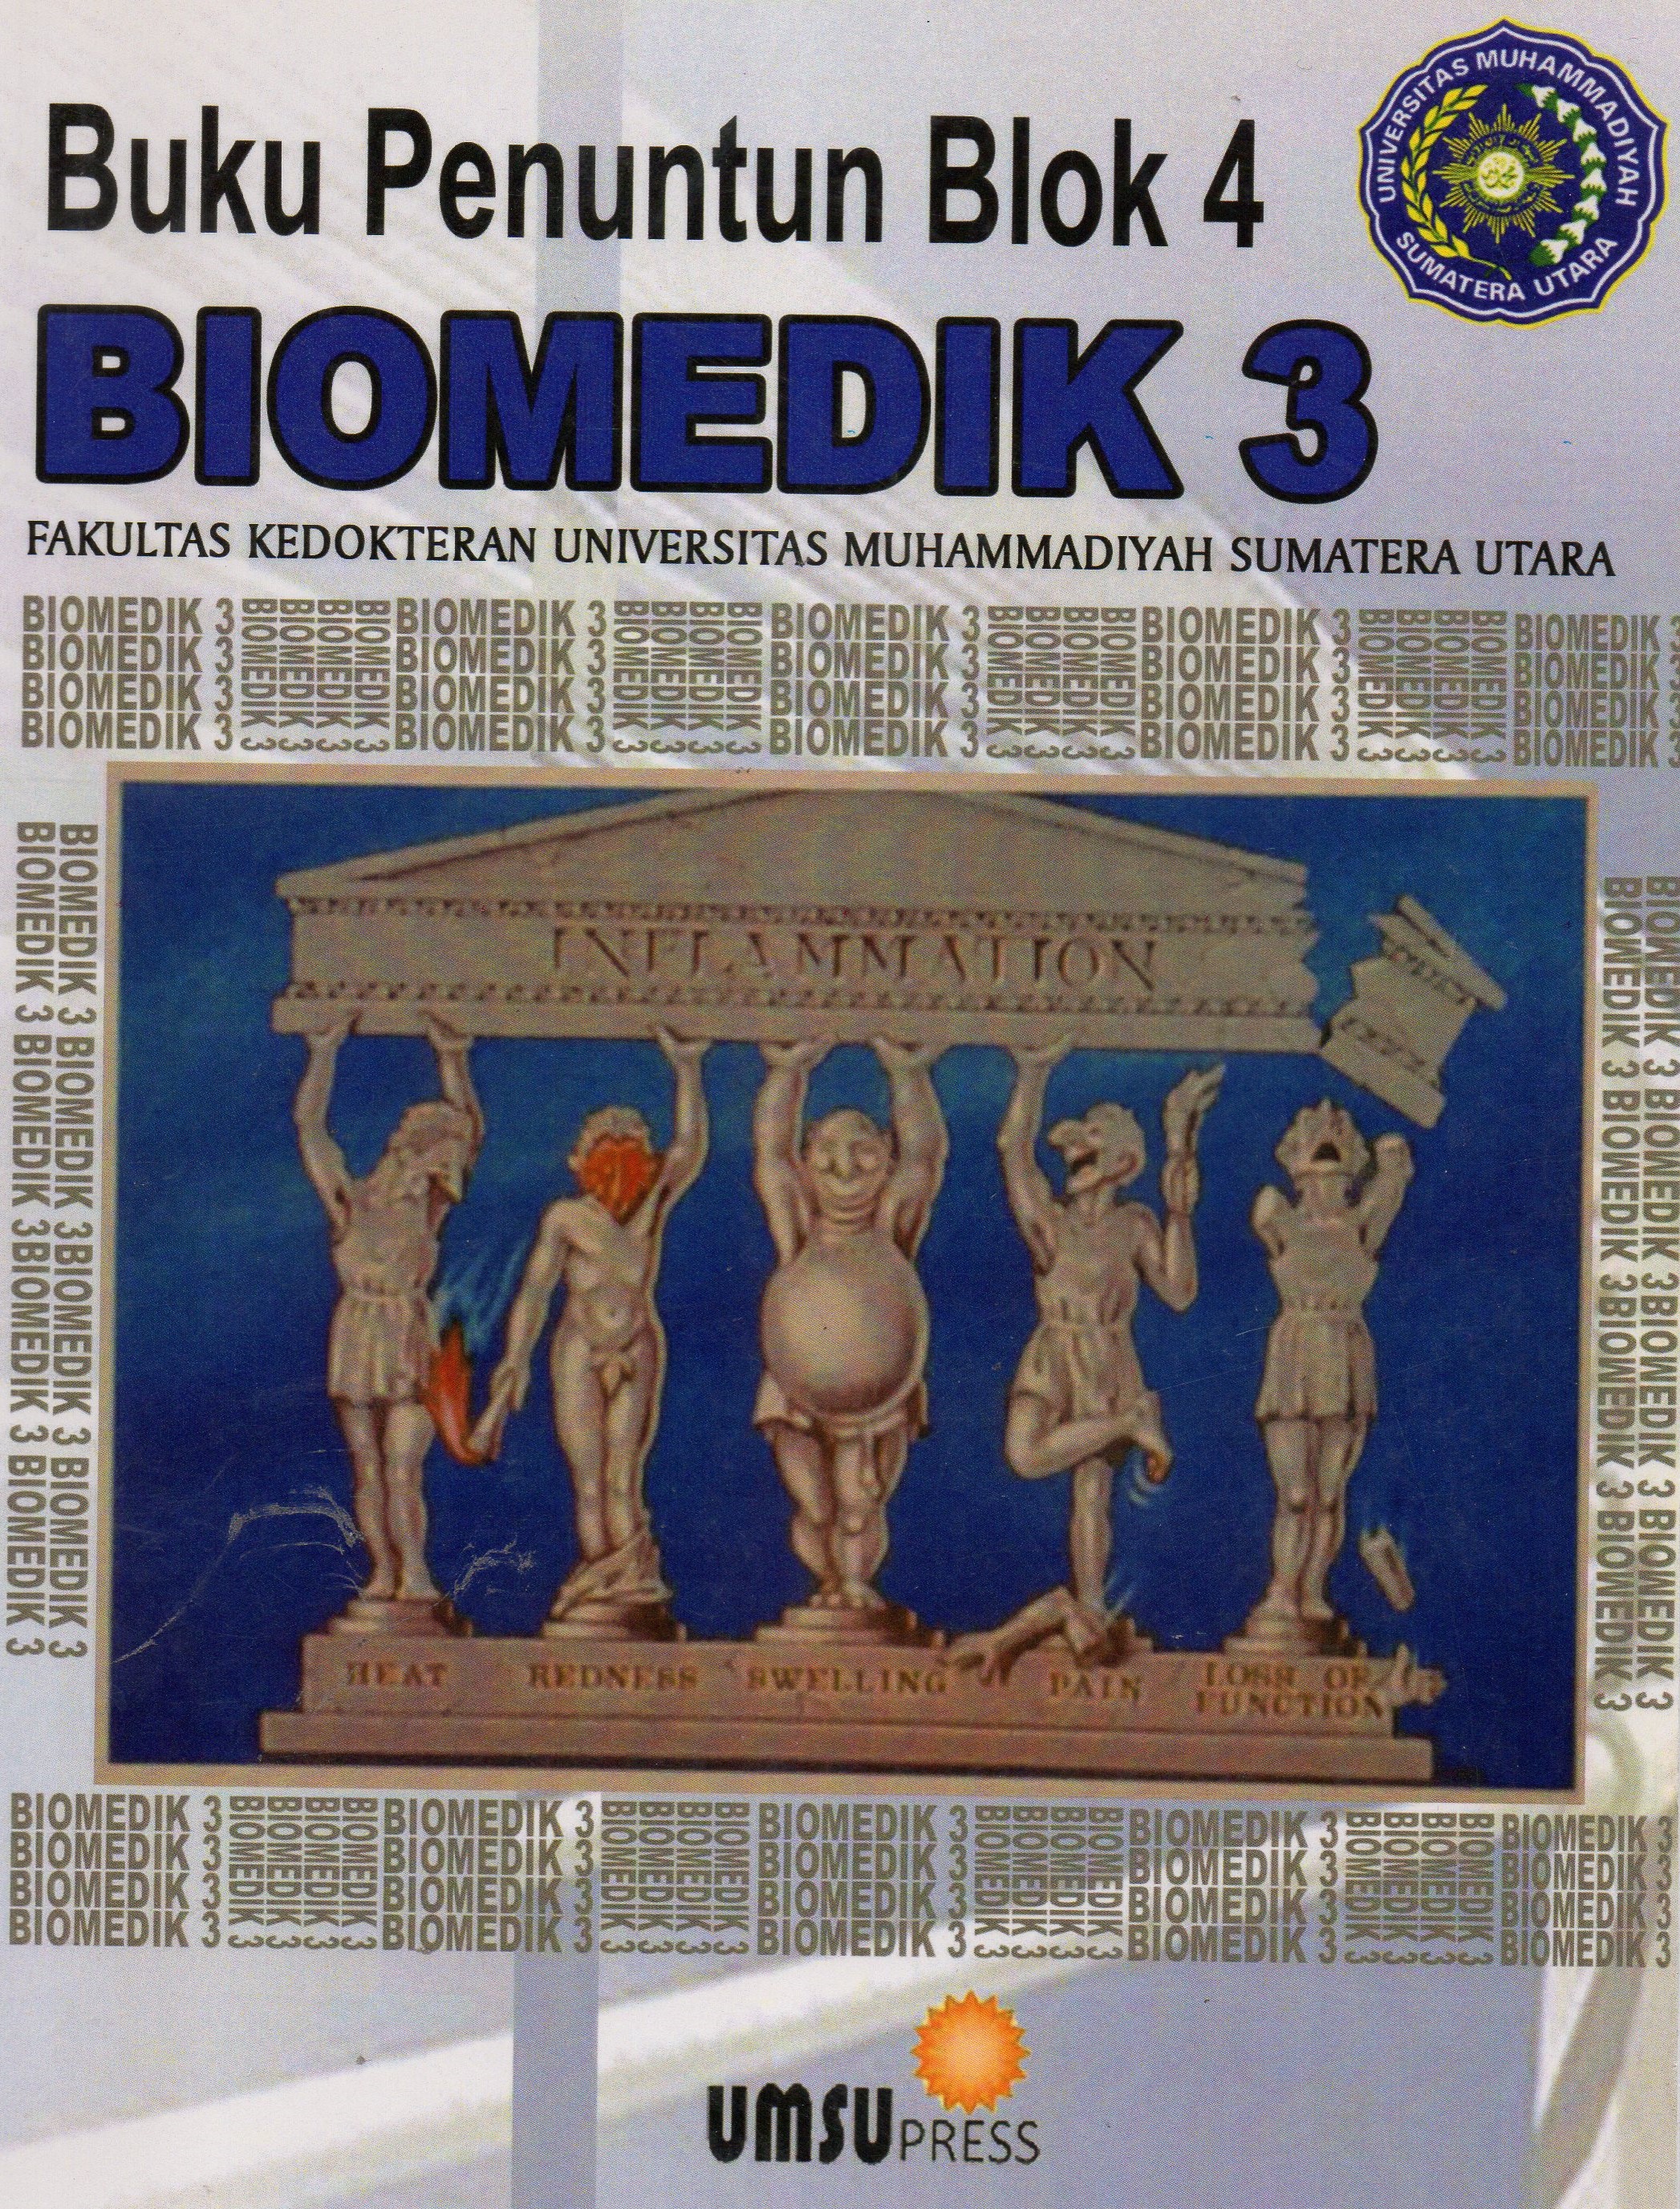 Buku Penuntun Blok 4 Biomedik 3 Fakultas Kedokteran Universitas Muhammadiyah Sumatera Utara